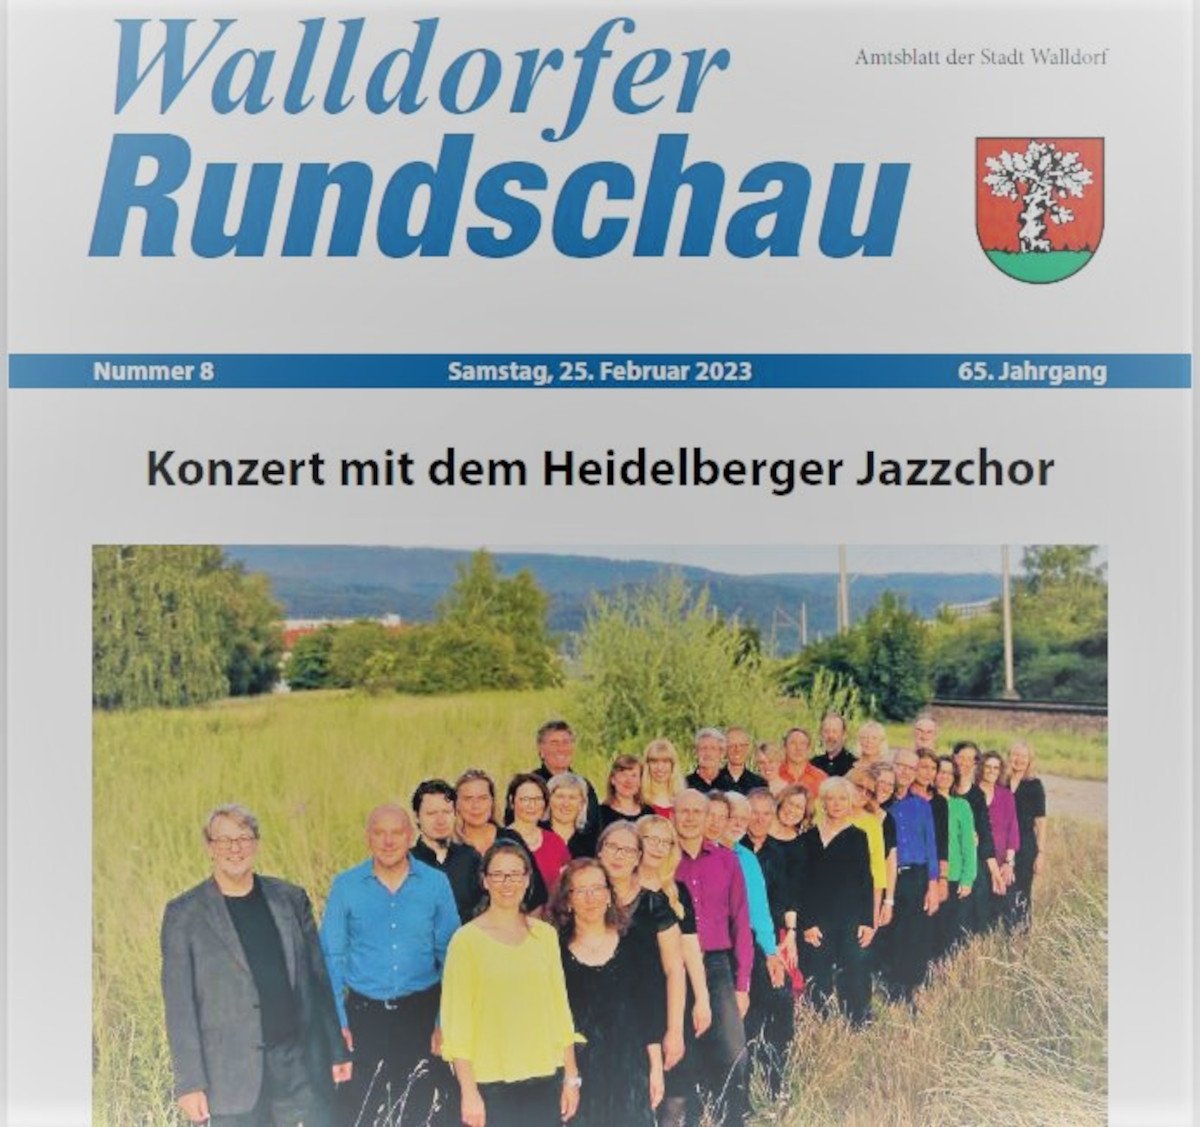 Die Walldorfer Rundschau 2023 Nr. 8 als E-paper | Bildschirmabgriff